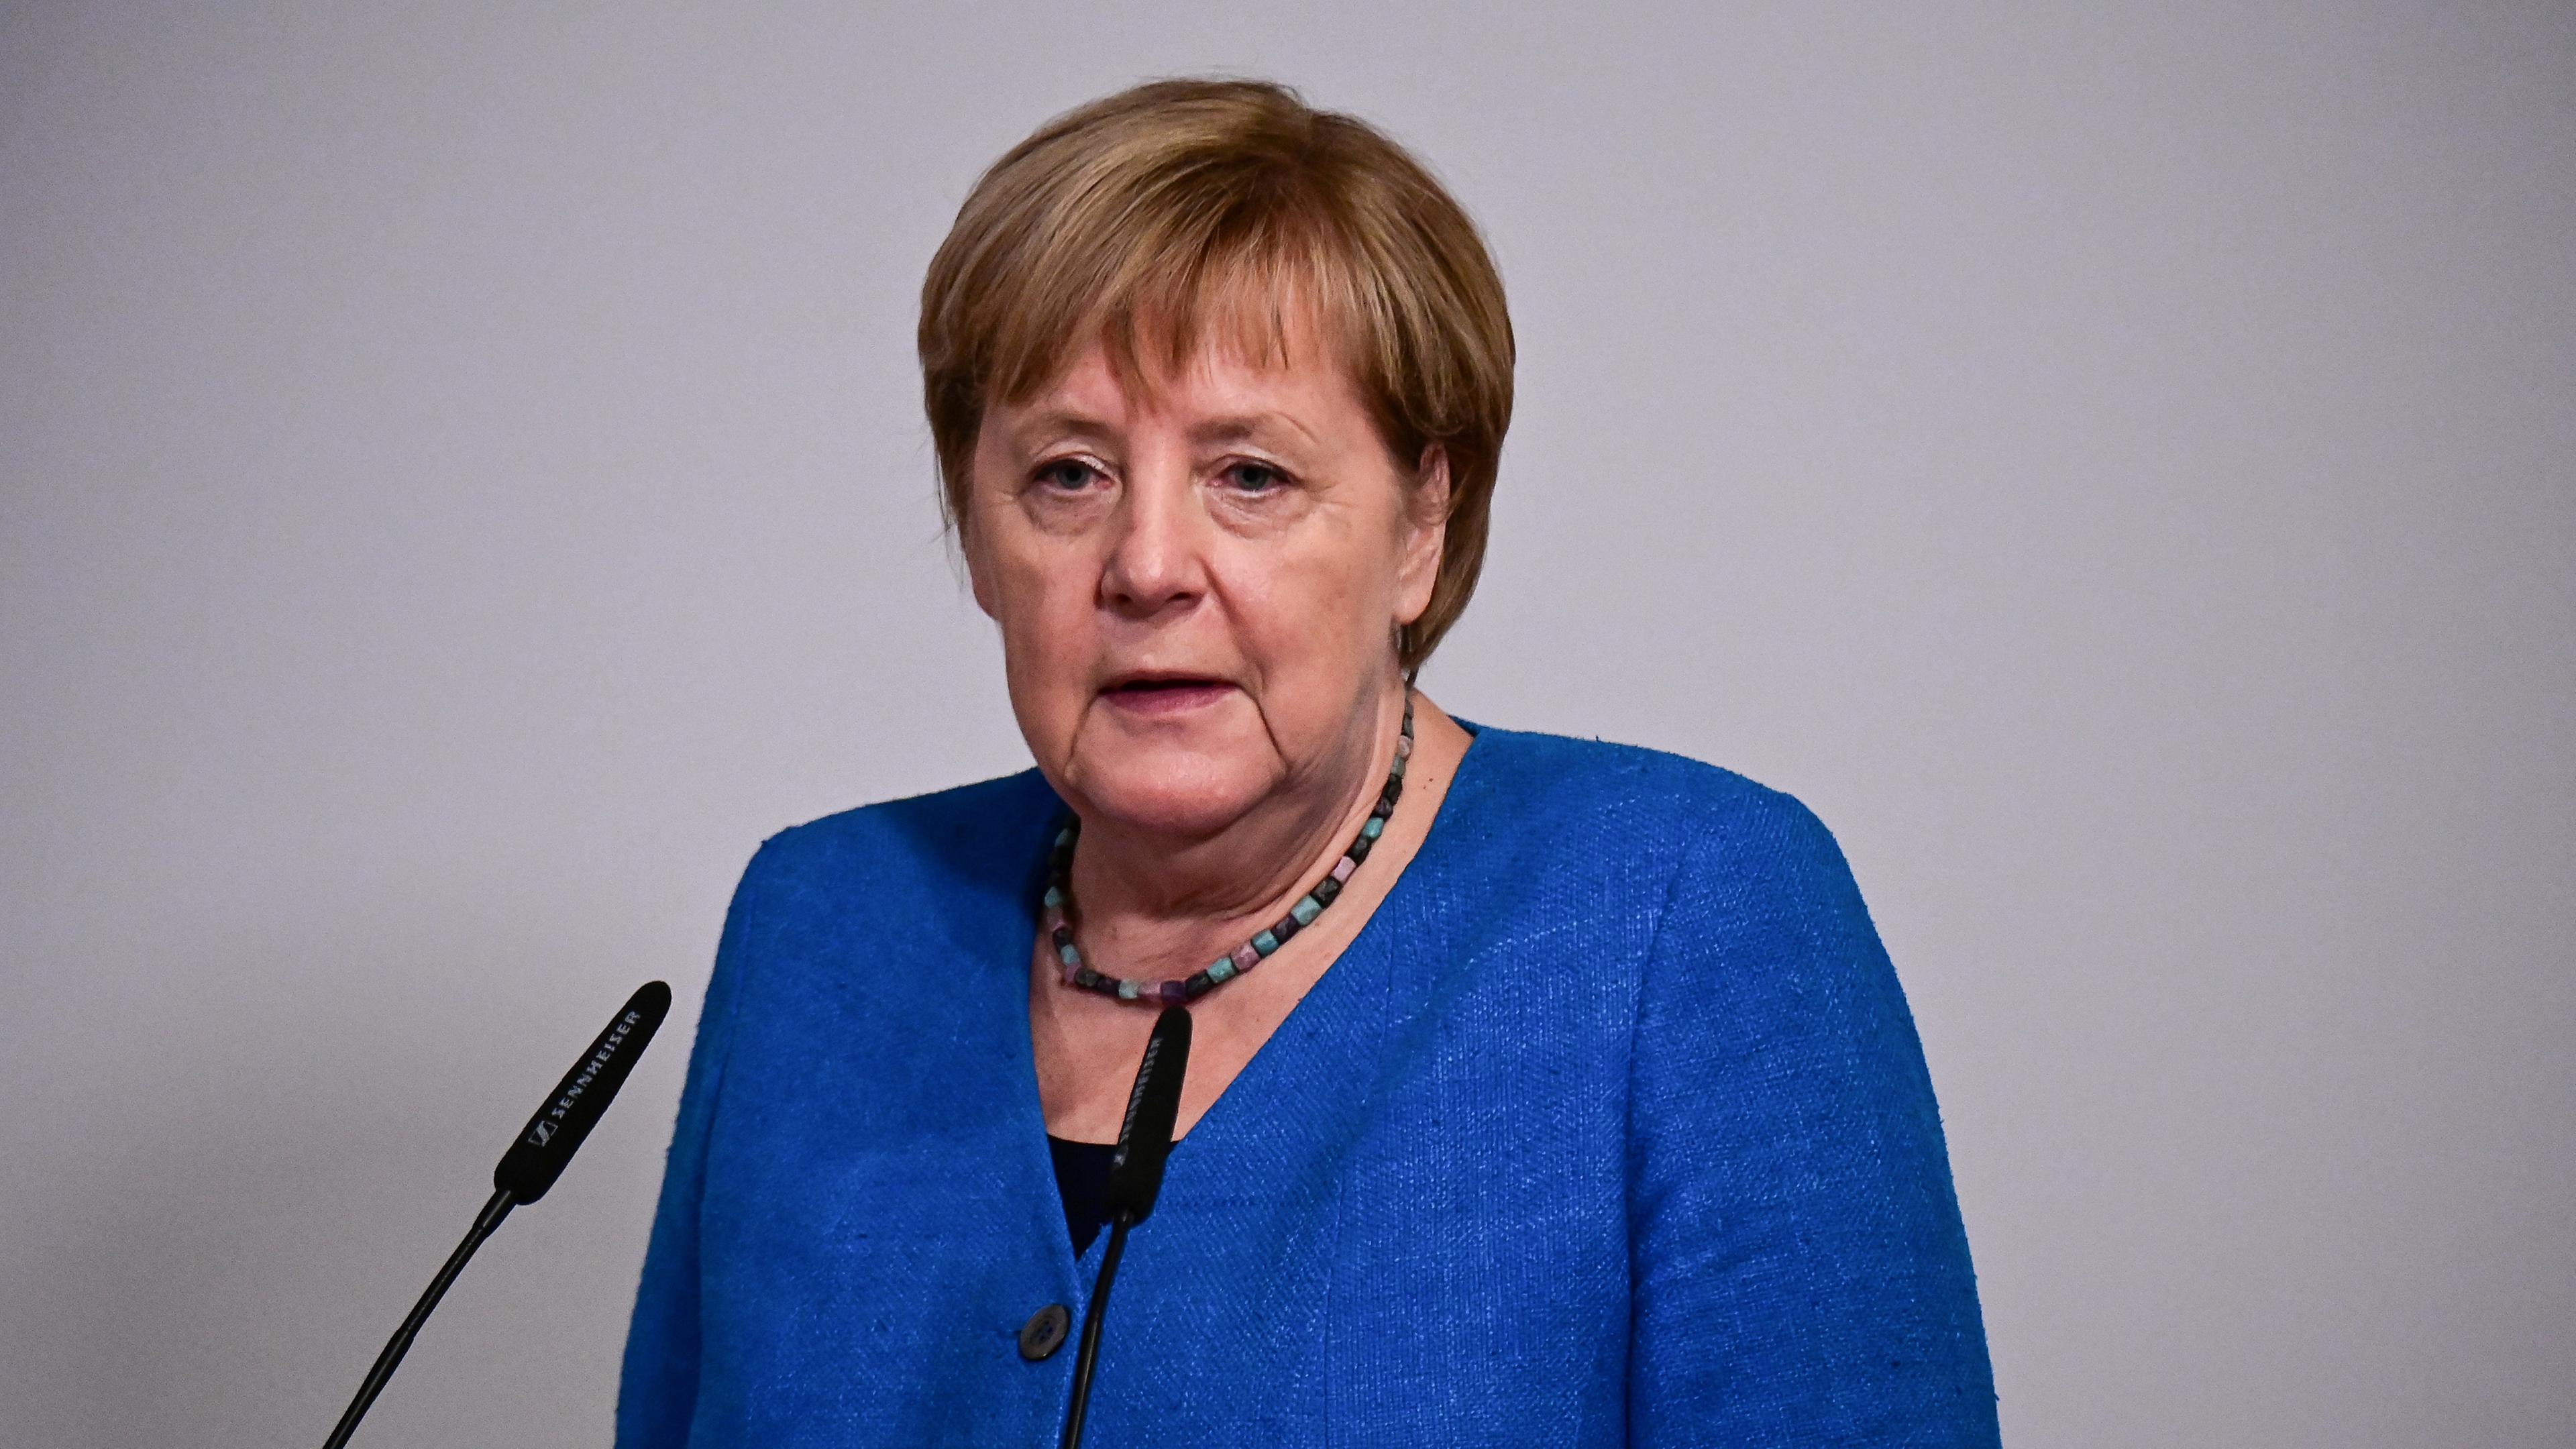 Bundeskanzlerin Merkel spricht bei Verleihung des Margot Friedländer-Preis 2021, Berlin, 20.09.2021